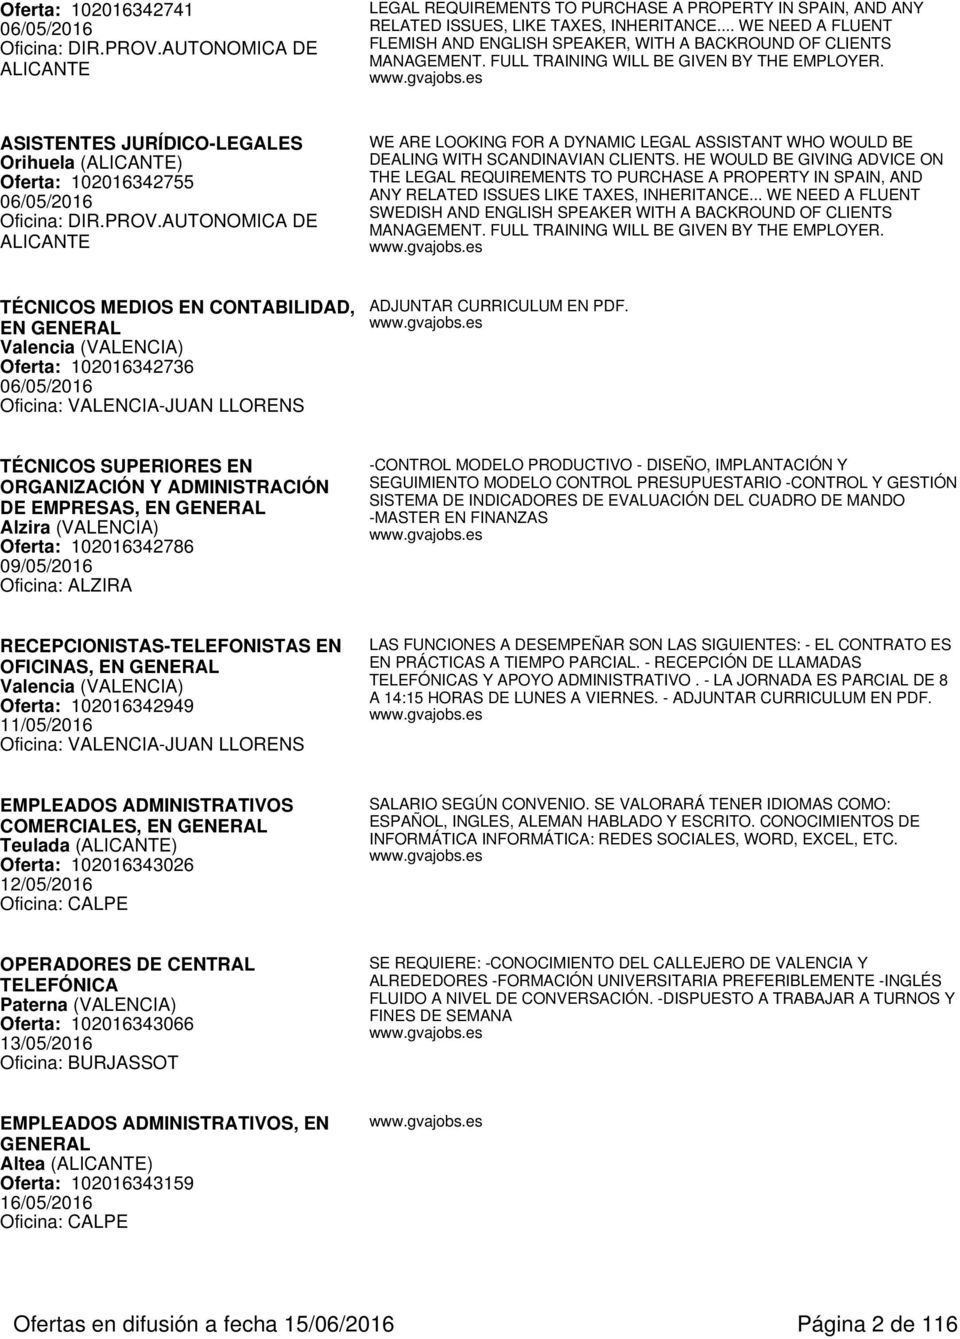 ASISTENTES JURÍDICO-LEGALES Orihuela (ALICANTE) Oferta: 102016342755 06/05/2016 Oficina: DIR.PROV.